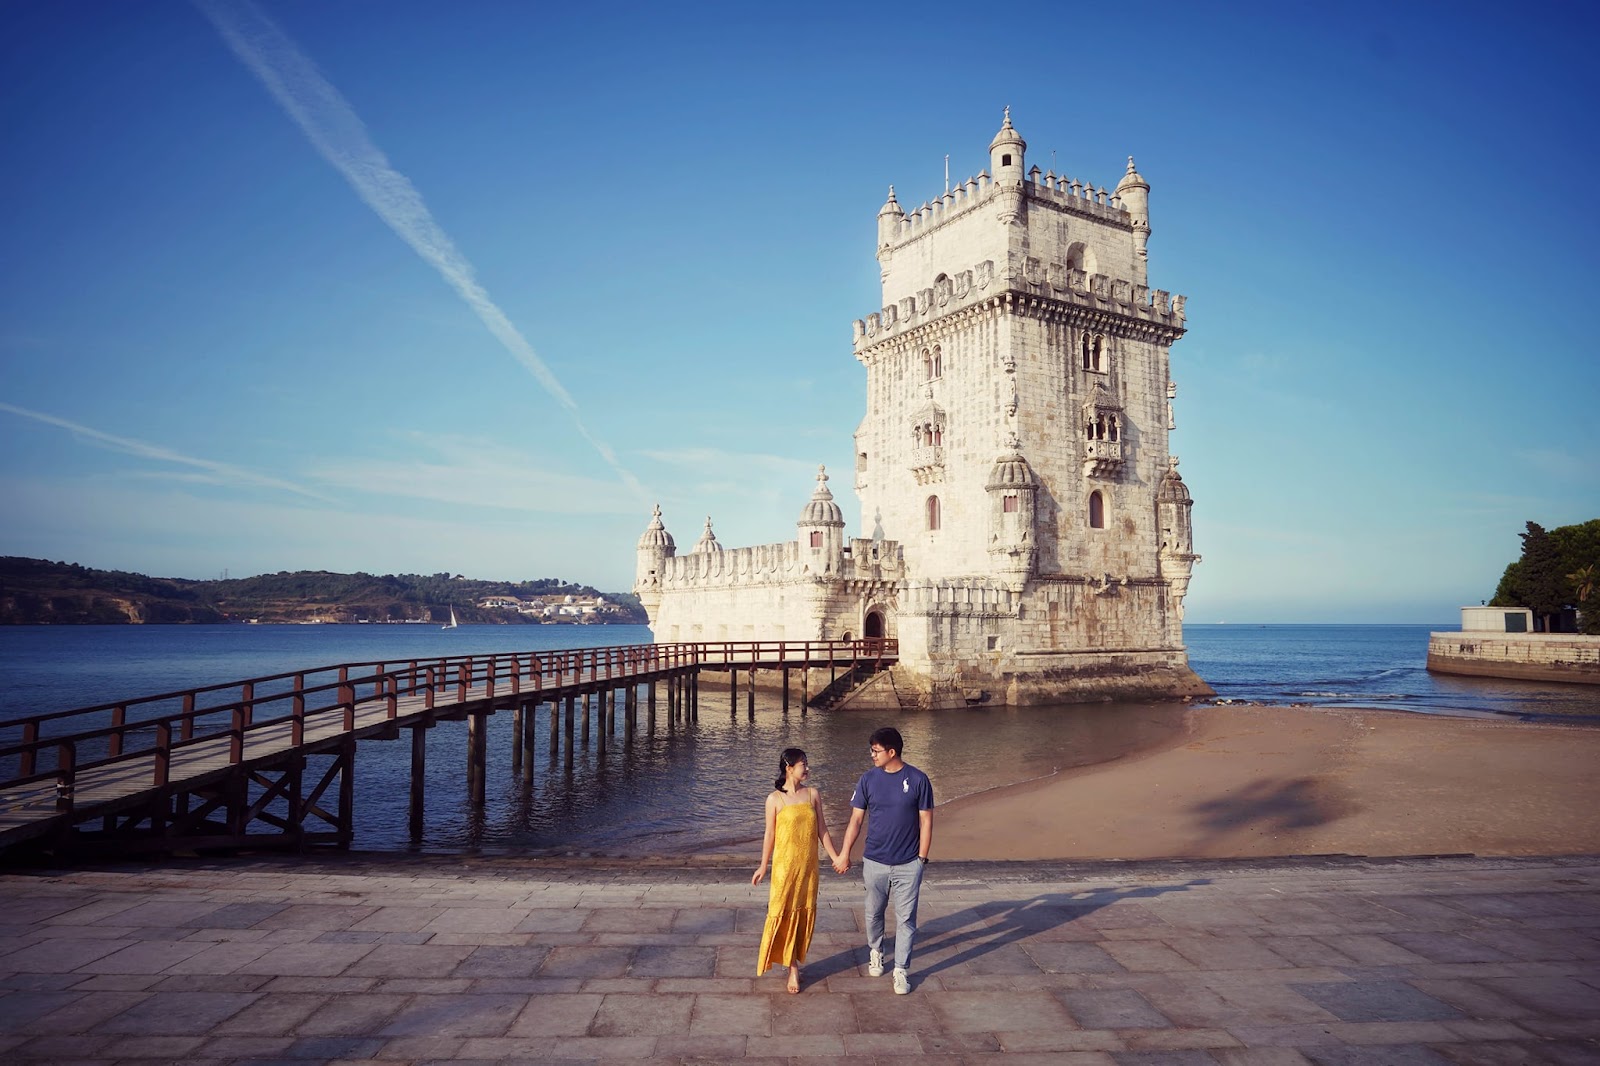 Khám phá Lisbon xinh đẹp bên dòng sông Tagus qua lăng kính du khách Việt - 8